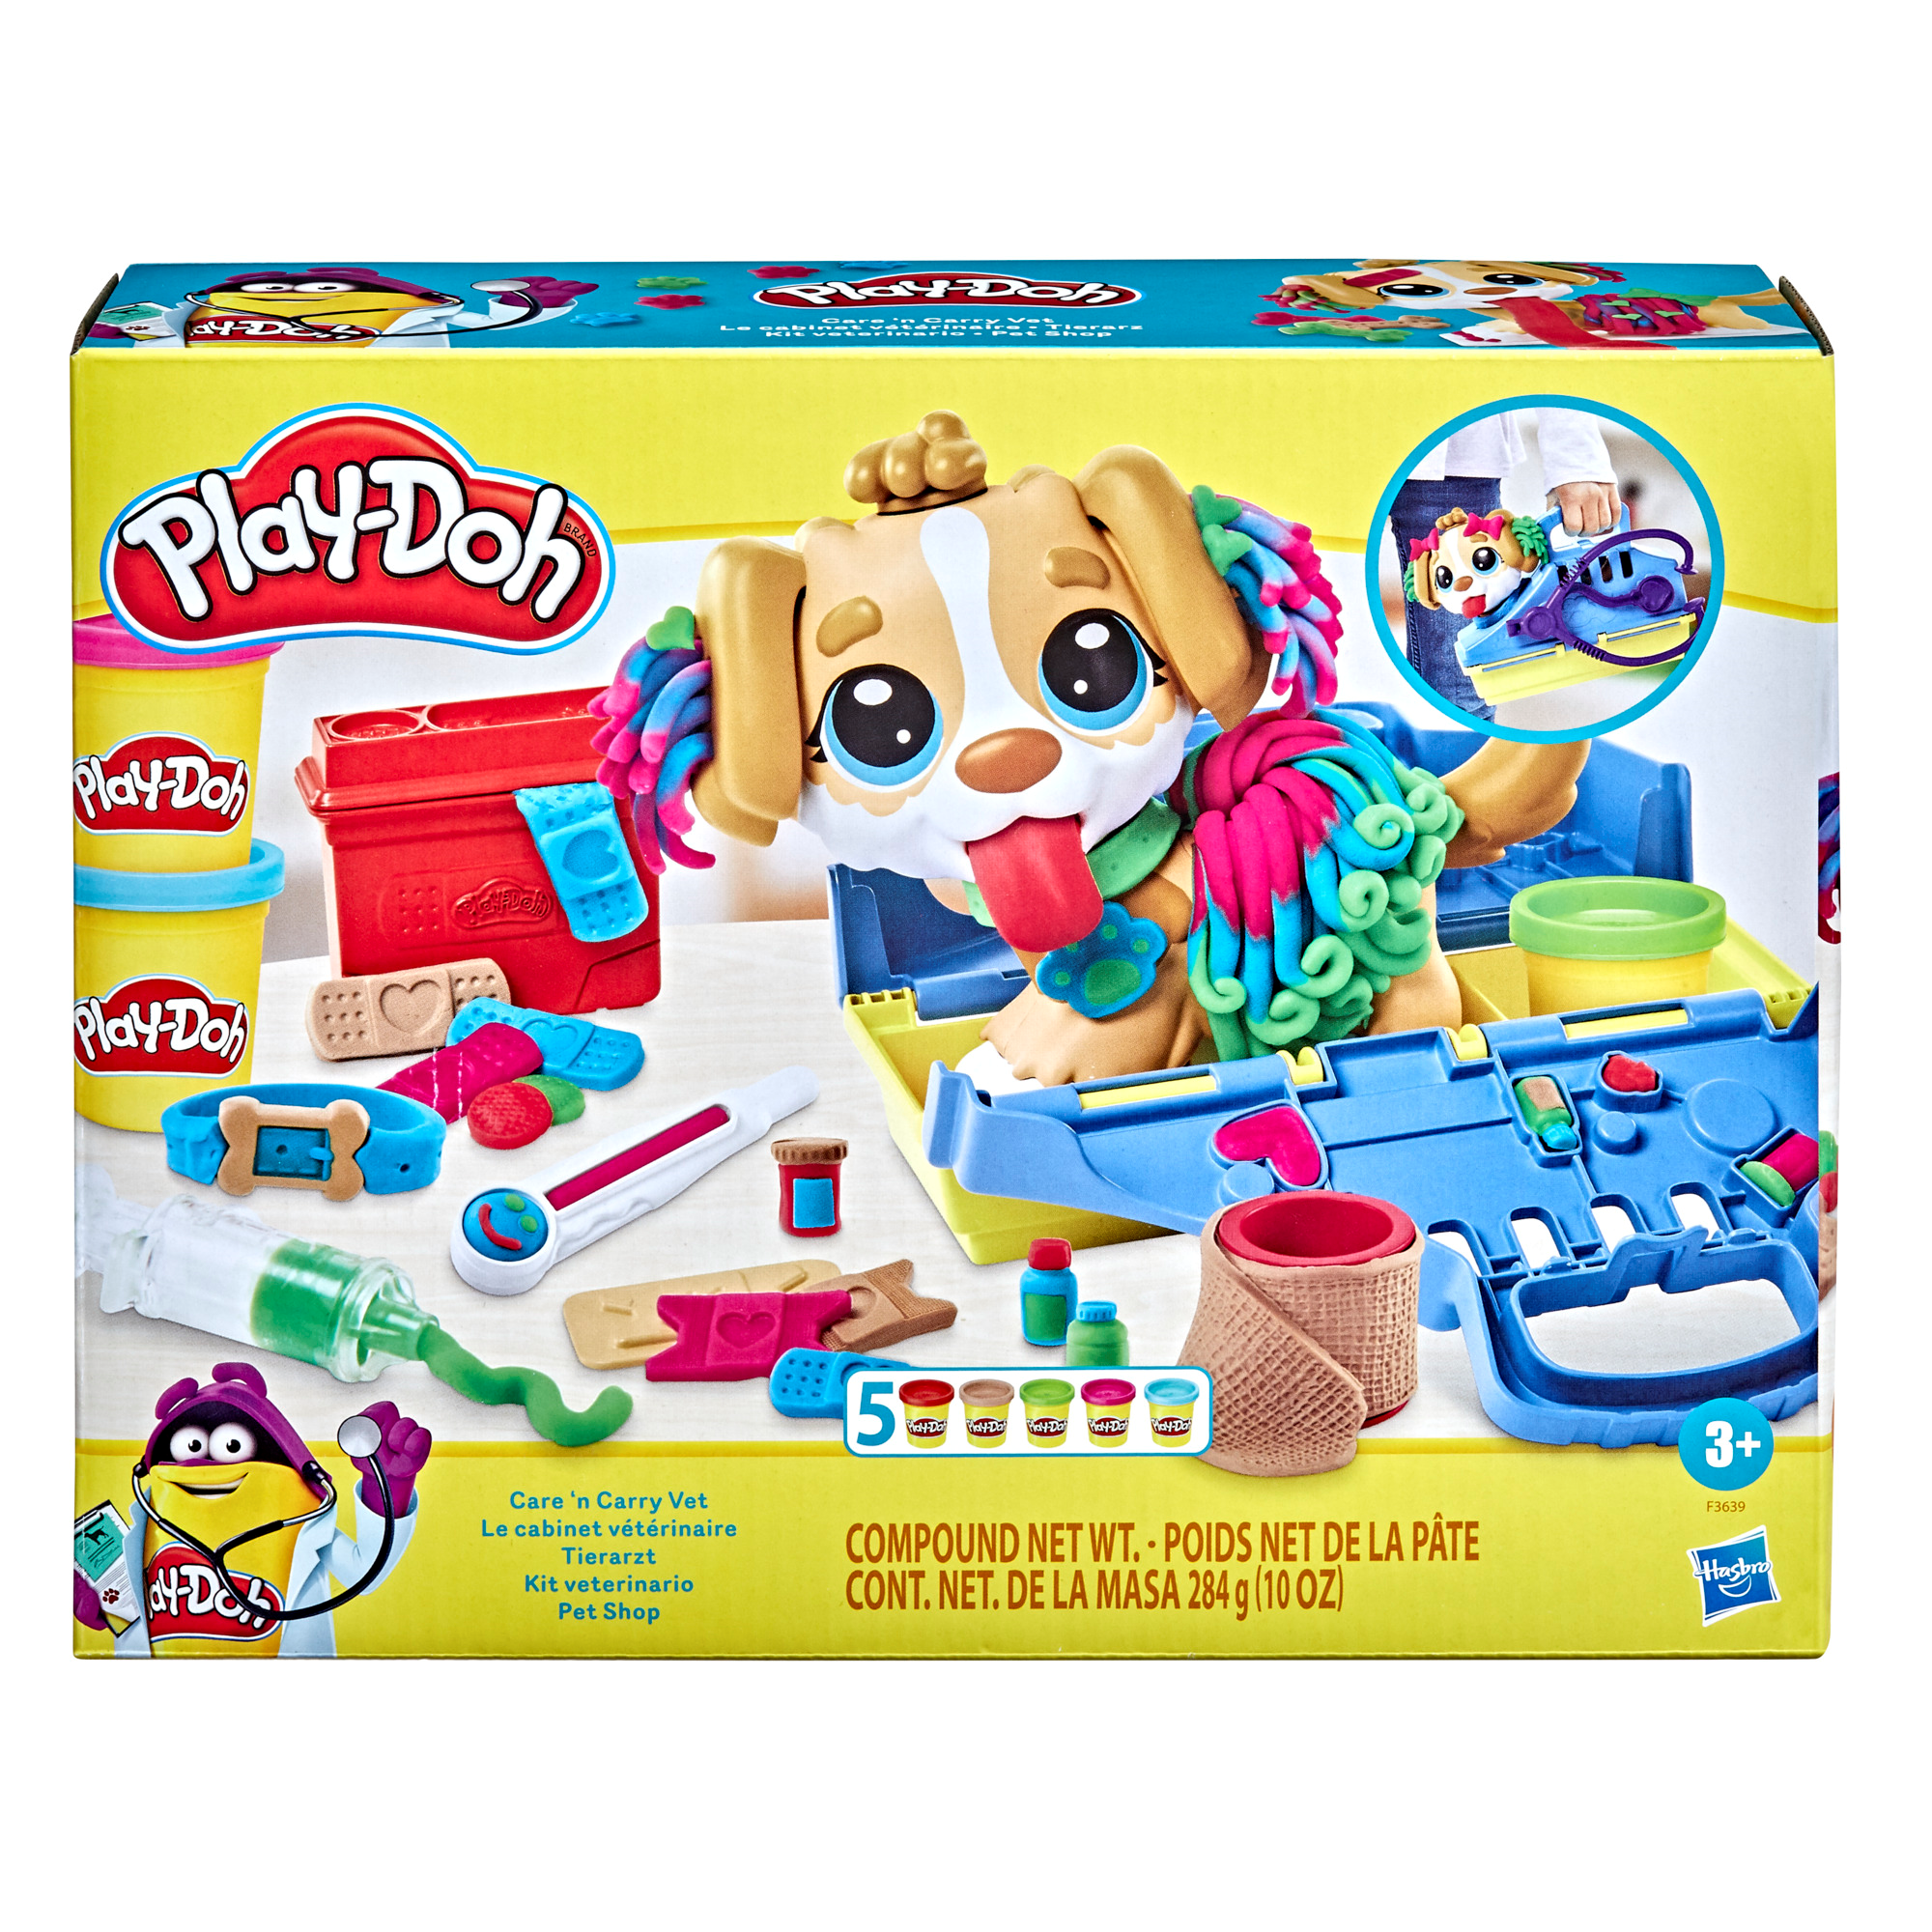 Play-doh - set da veterinario, playset con 10 strumenti e 5 colori